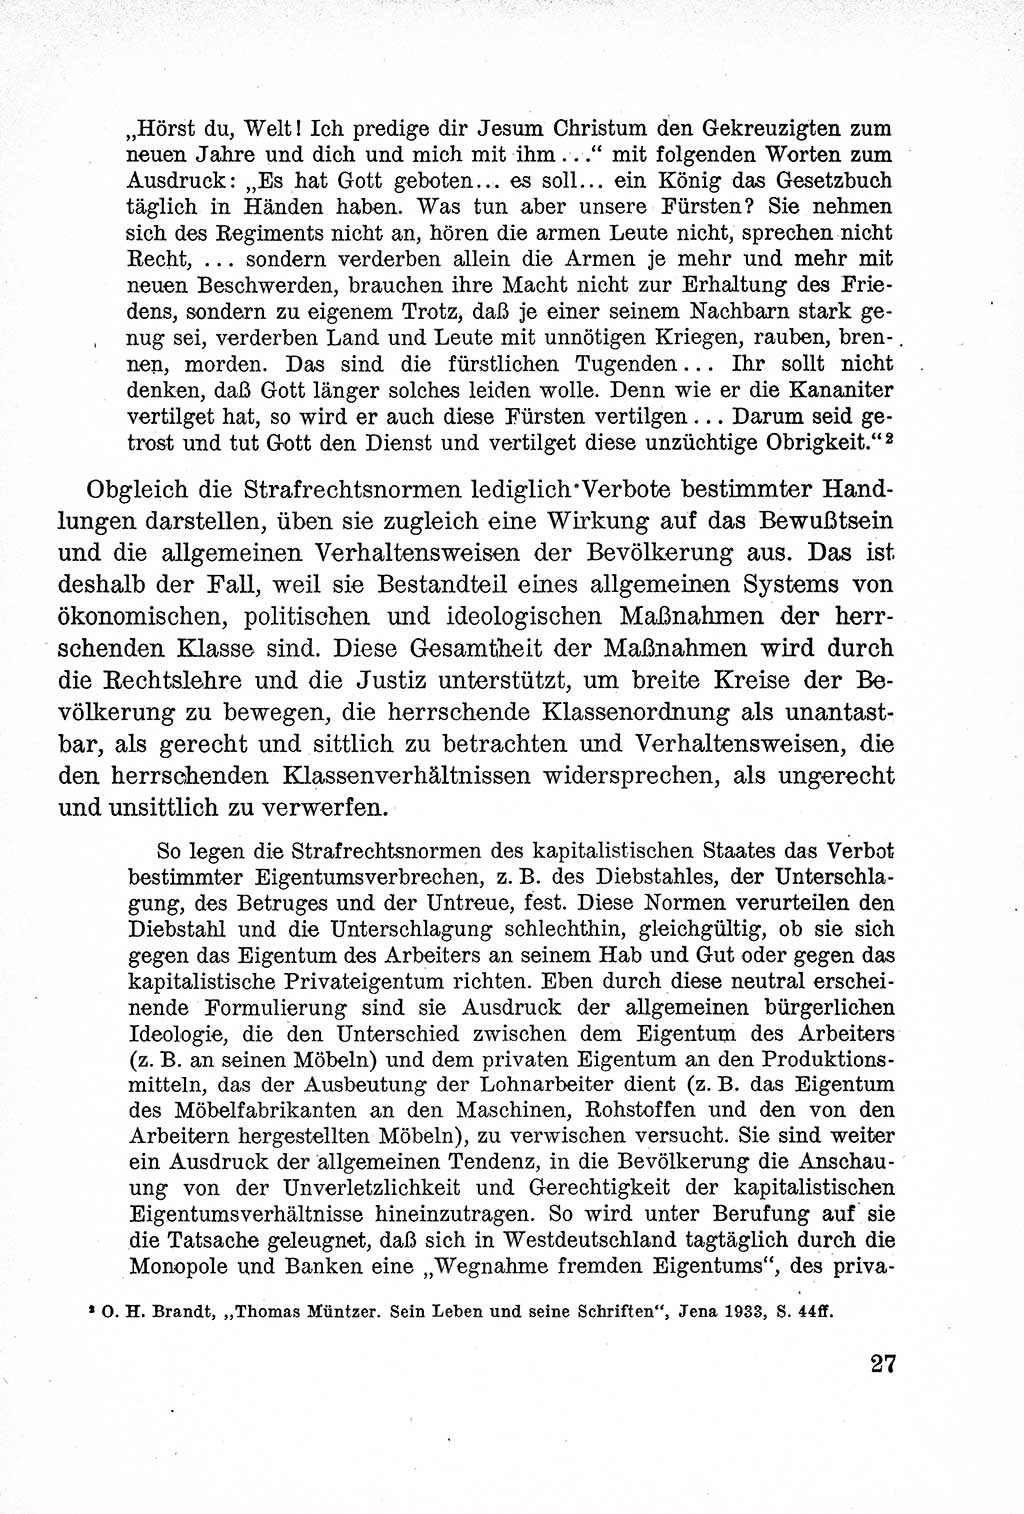 Lehrbuch des Strafrechts der Deutschen Demokratischen Republik (DDR), Allgemeiner Teil 1957, Seite 27 (Lb. Strafr. DDR AT 1957, S. 27)